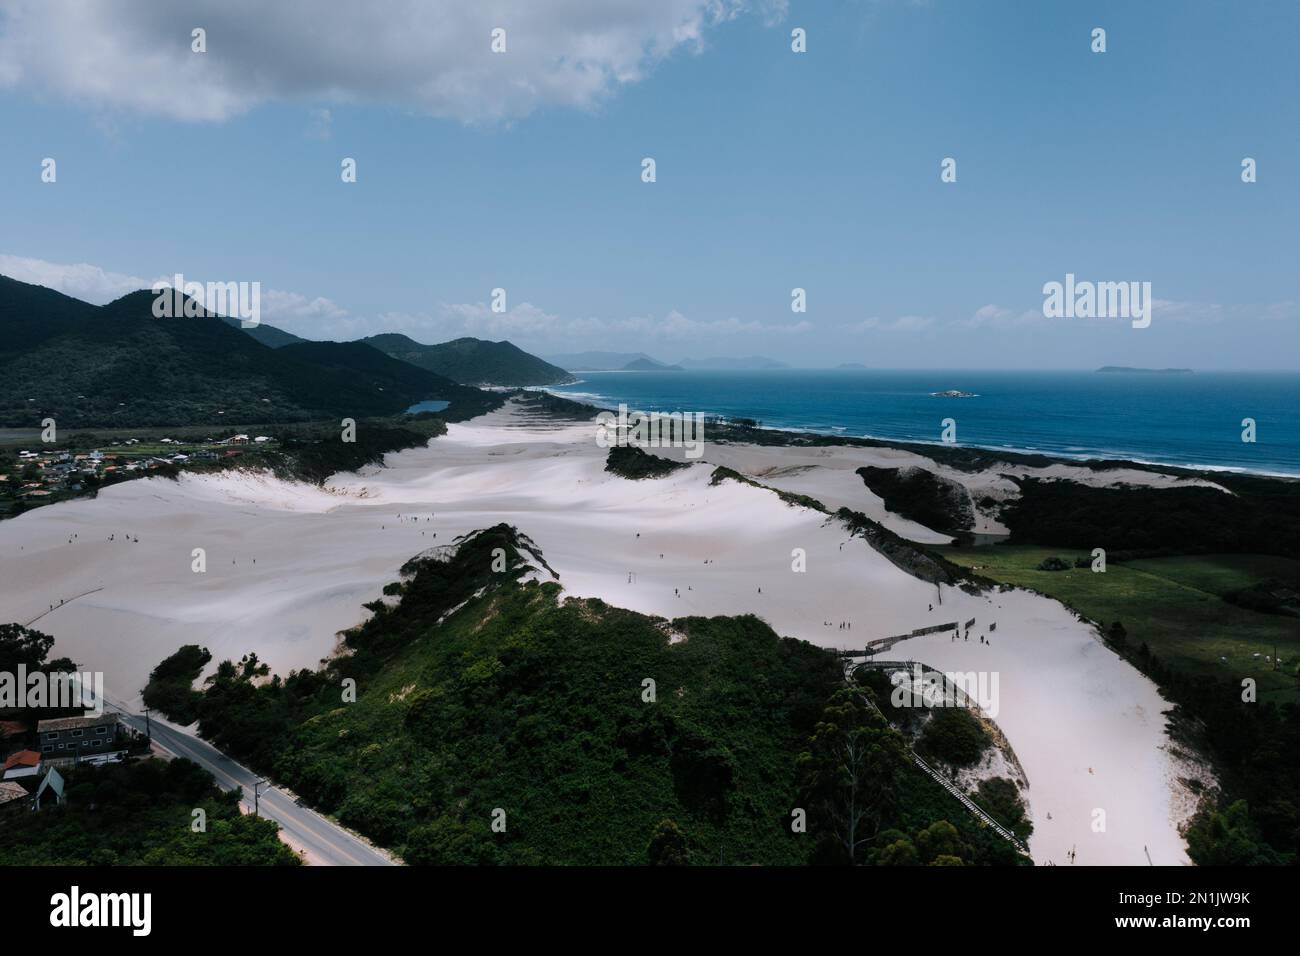 Die Dünen von Siriú. Dunas do Siriú Garapaba. Drohnenaufnahme von Dünen aus Sand dirket am Meer. Sand und grüne Landschaft 1 Stock Photo